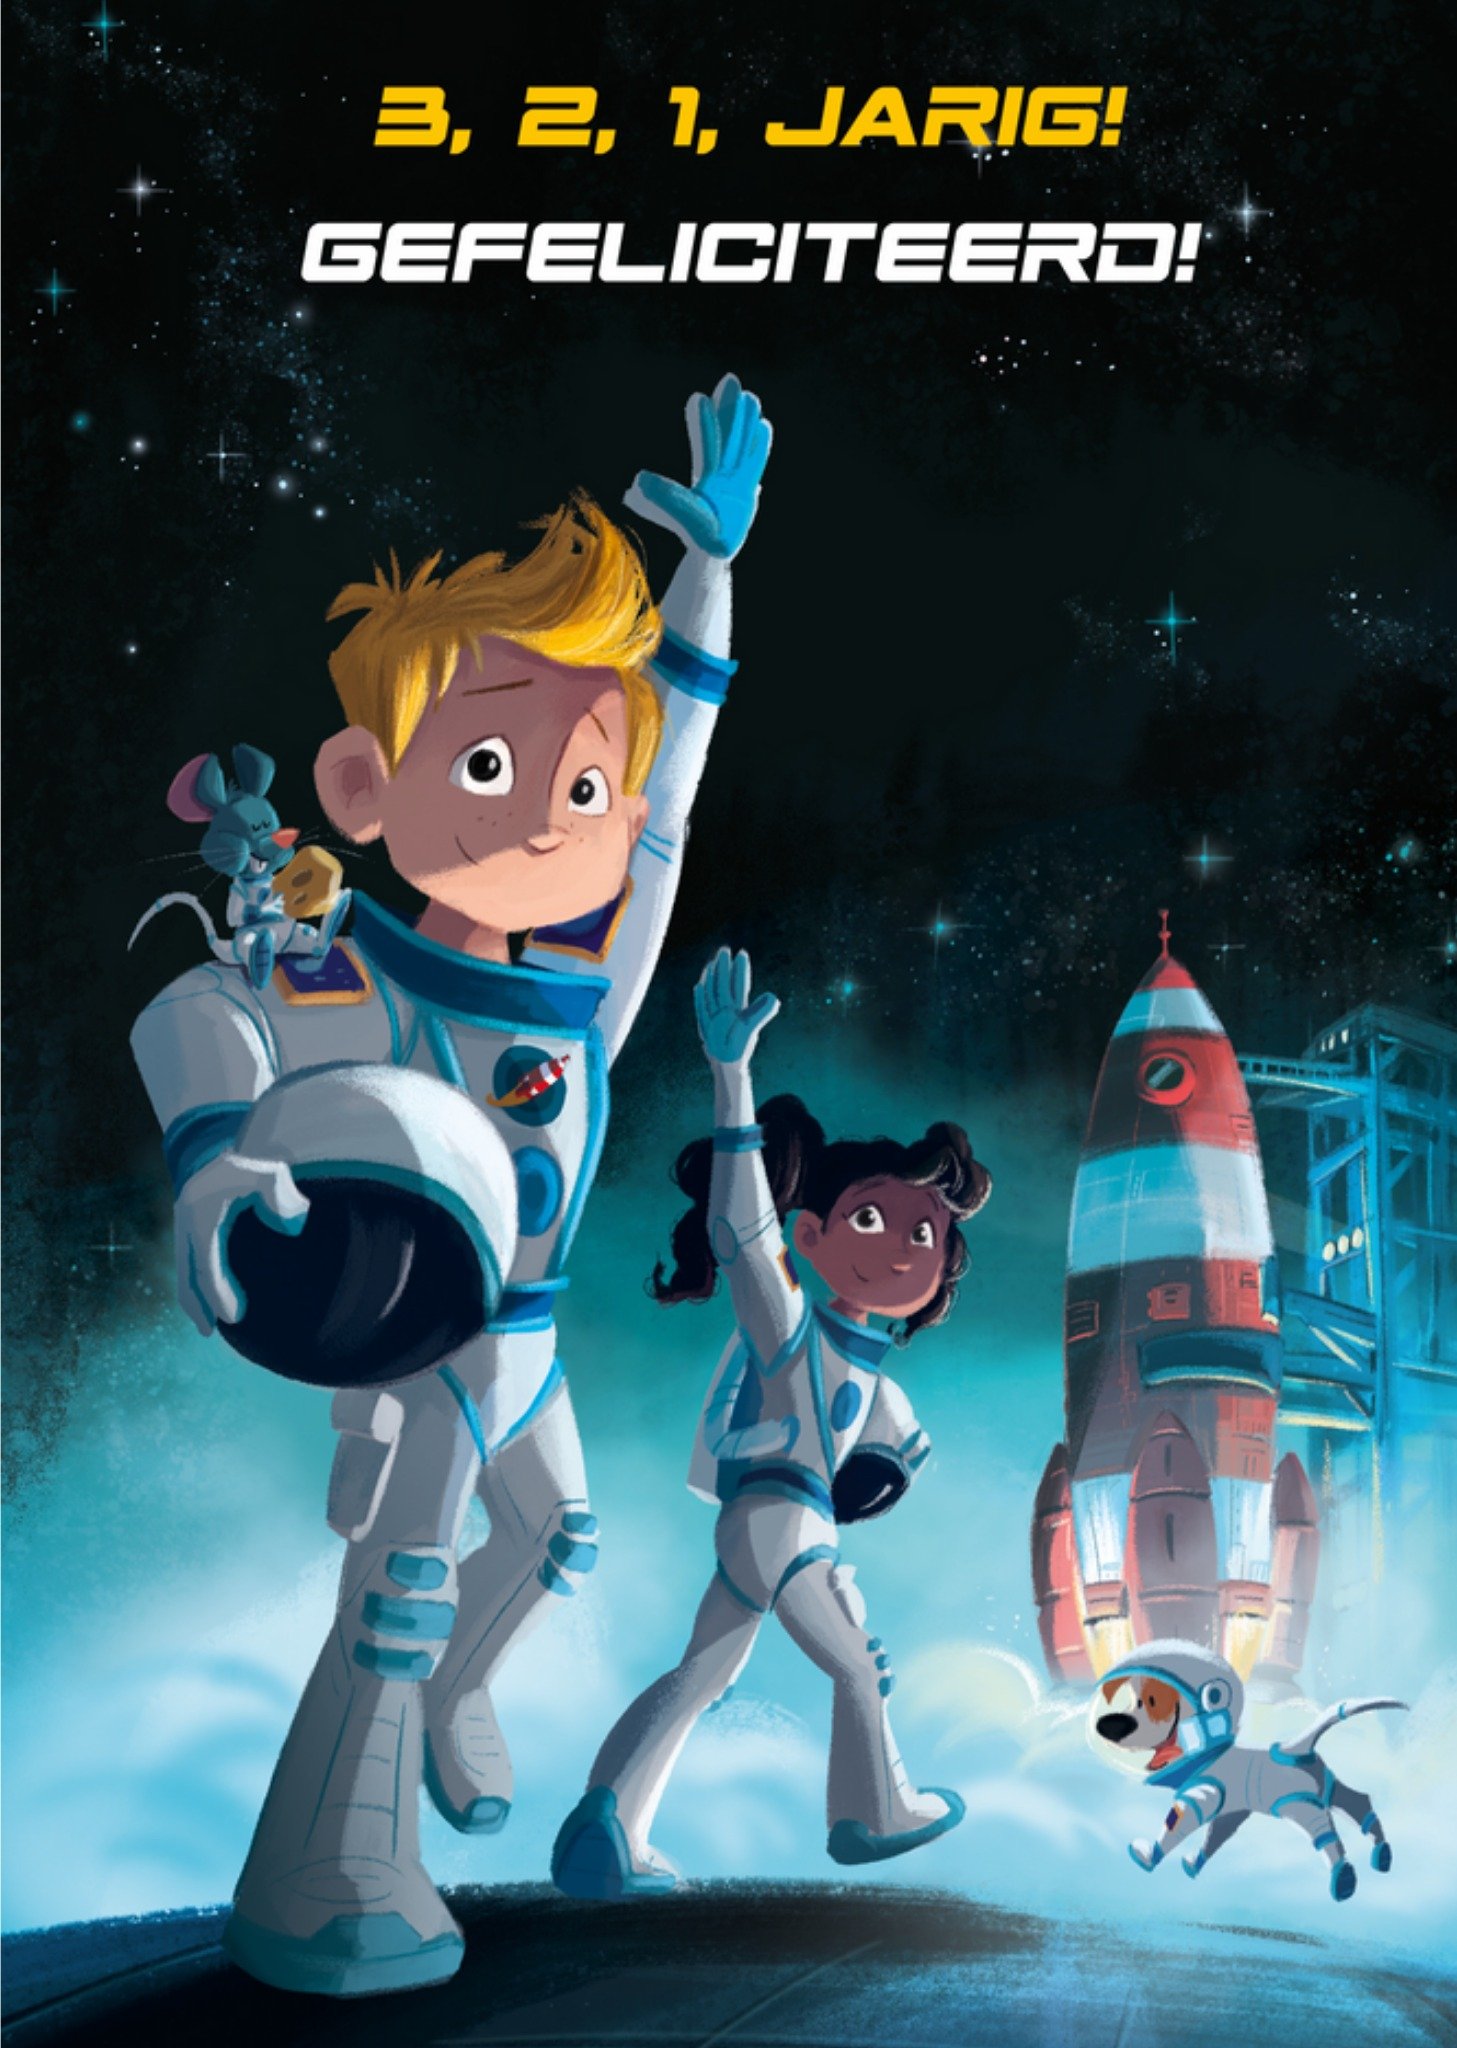 De Kleine Astronauten - Verjaardagskaart - 3,2,1 Jarig!